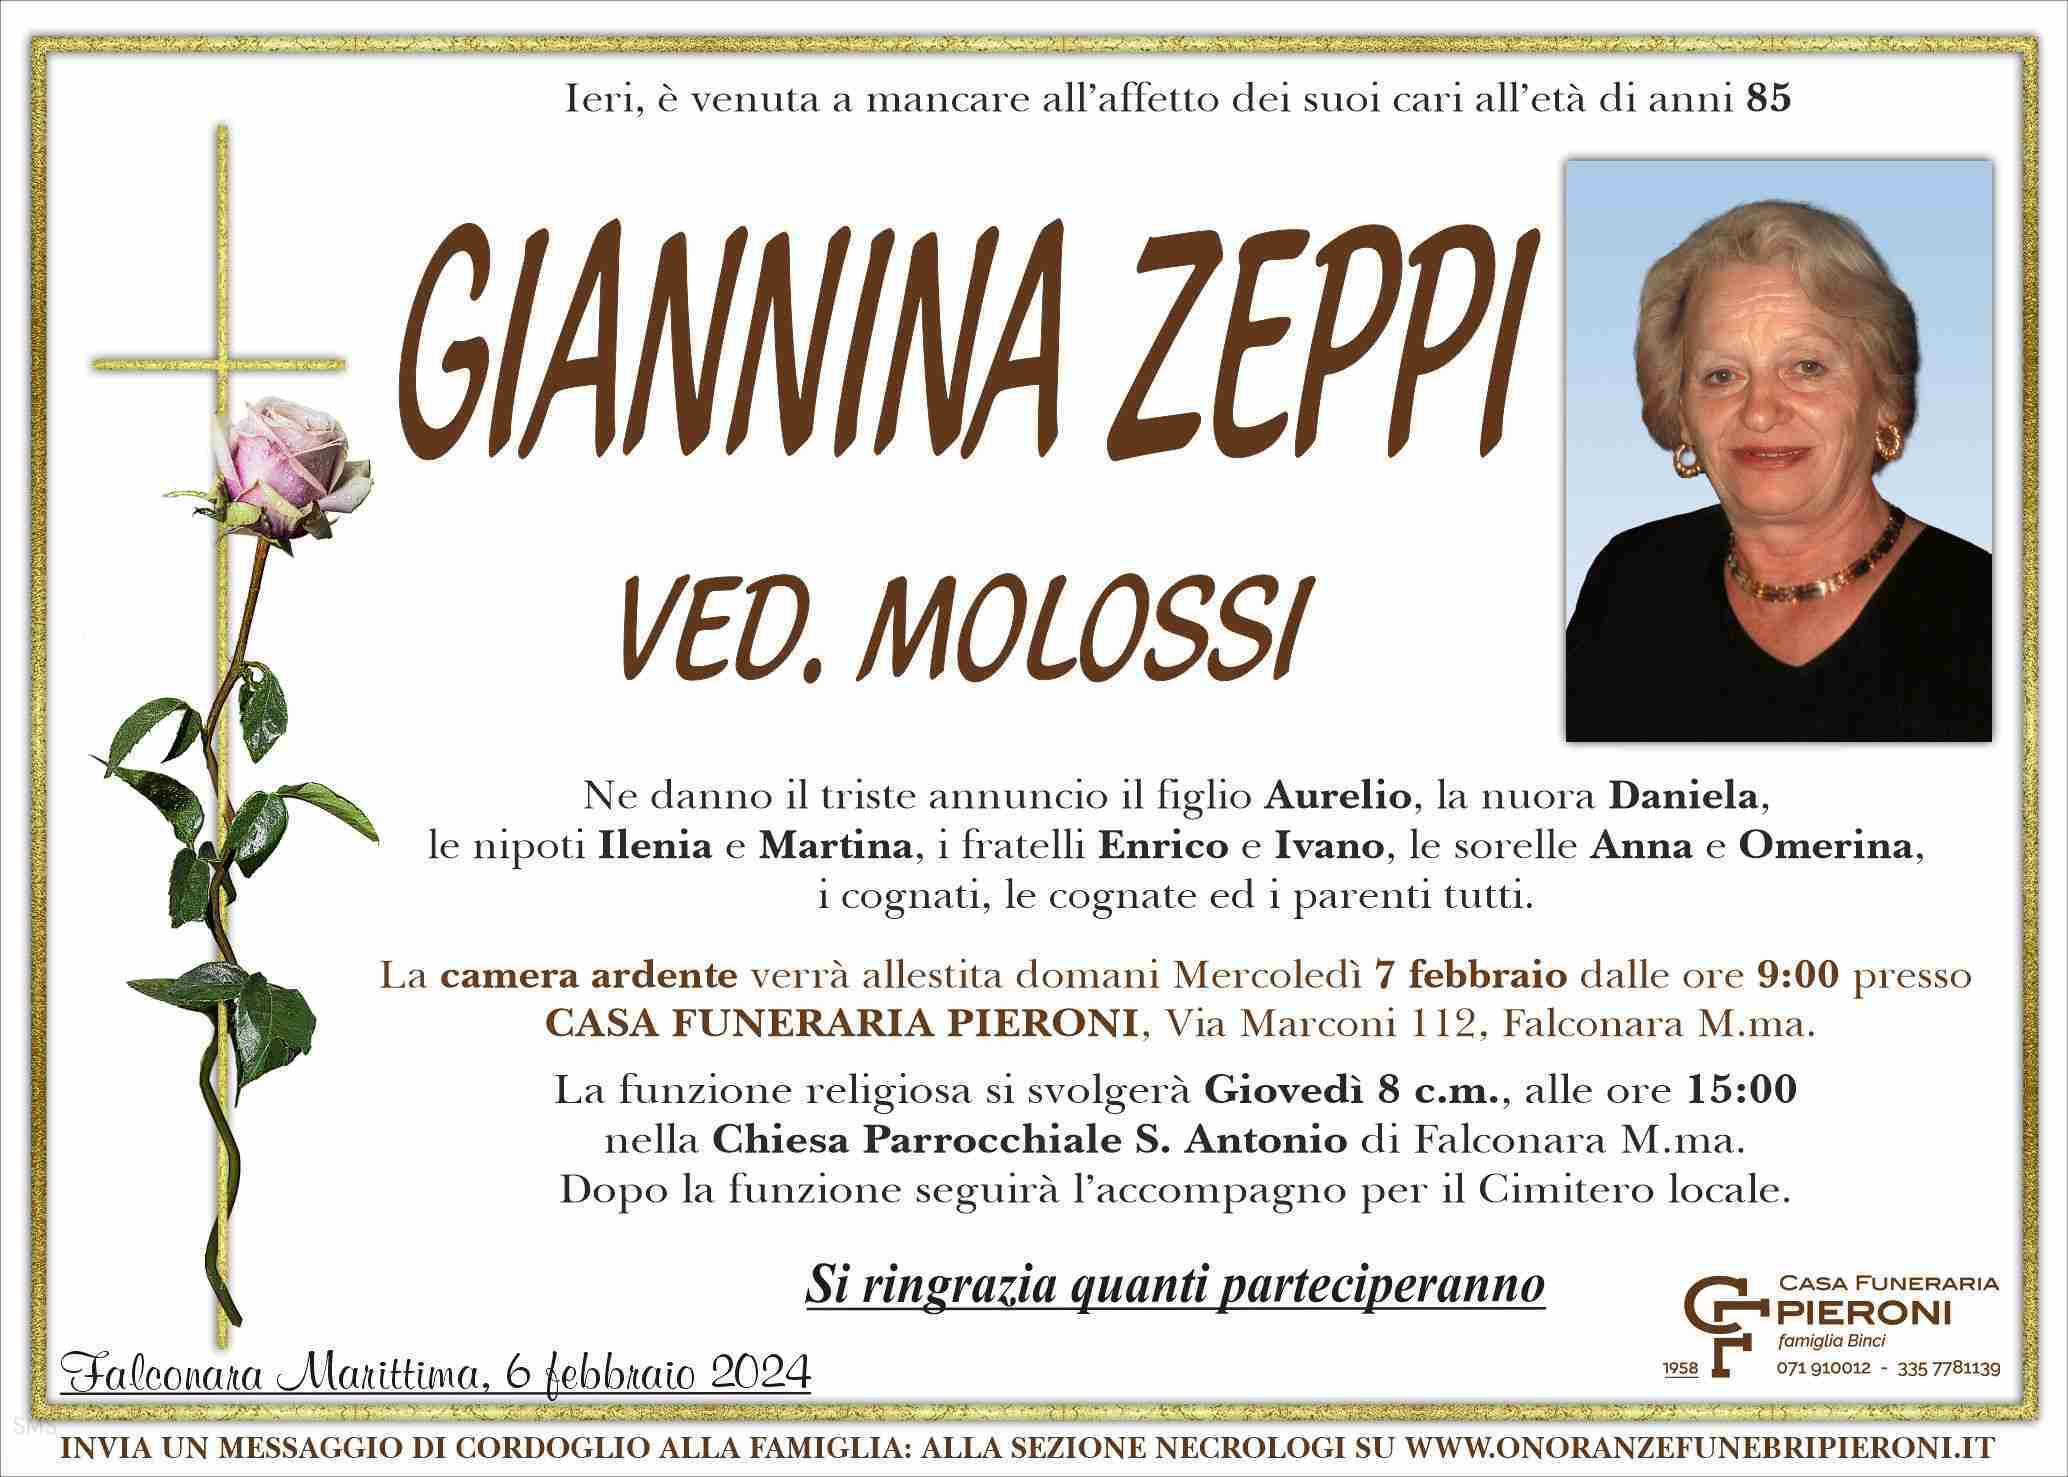 Giannina Zeppi